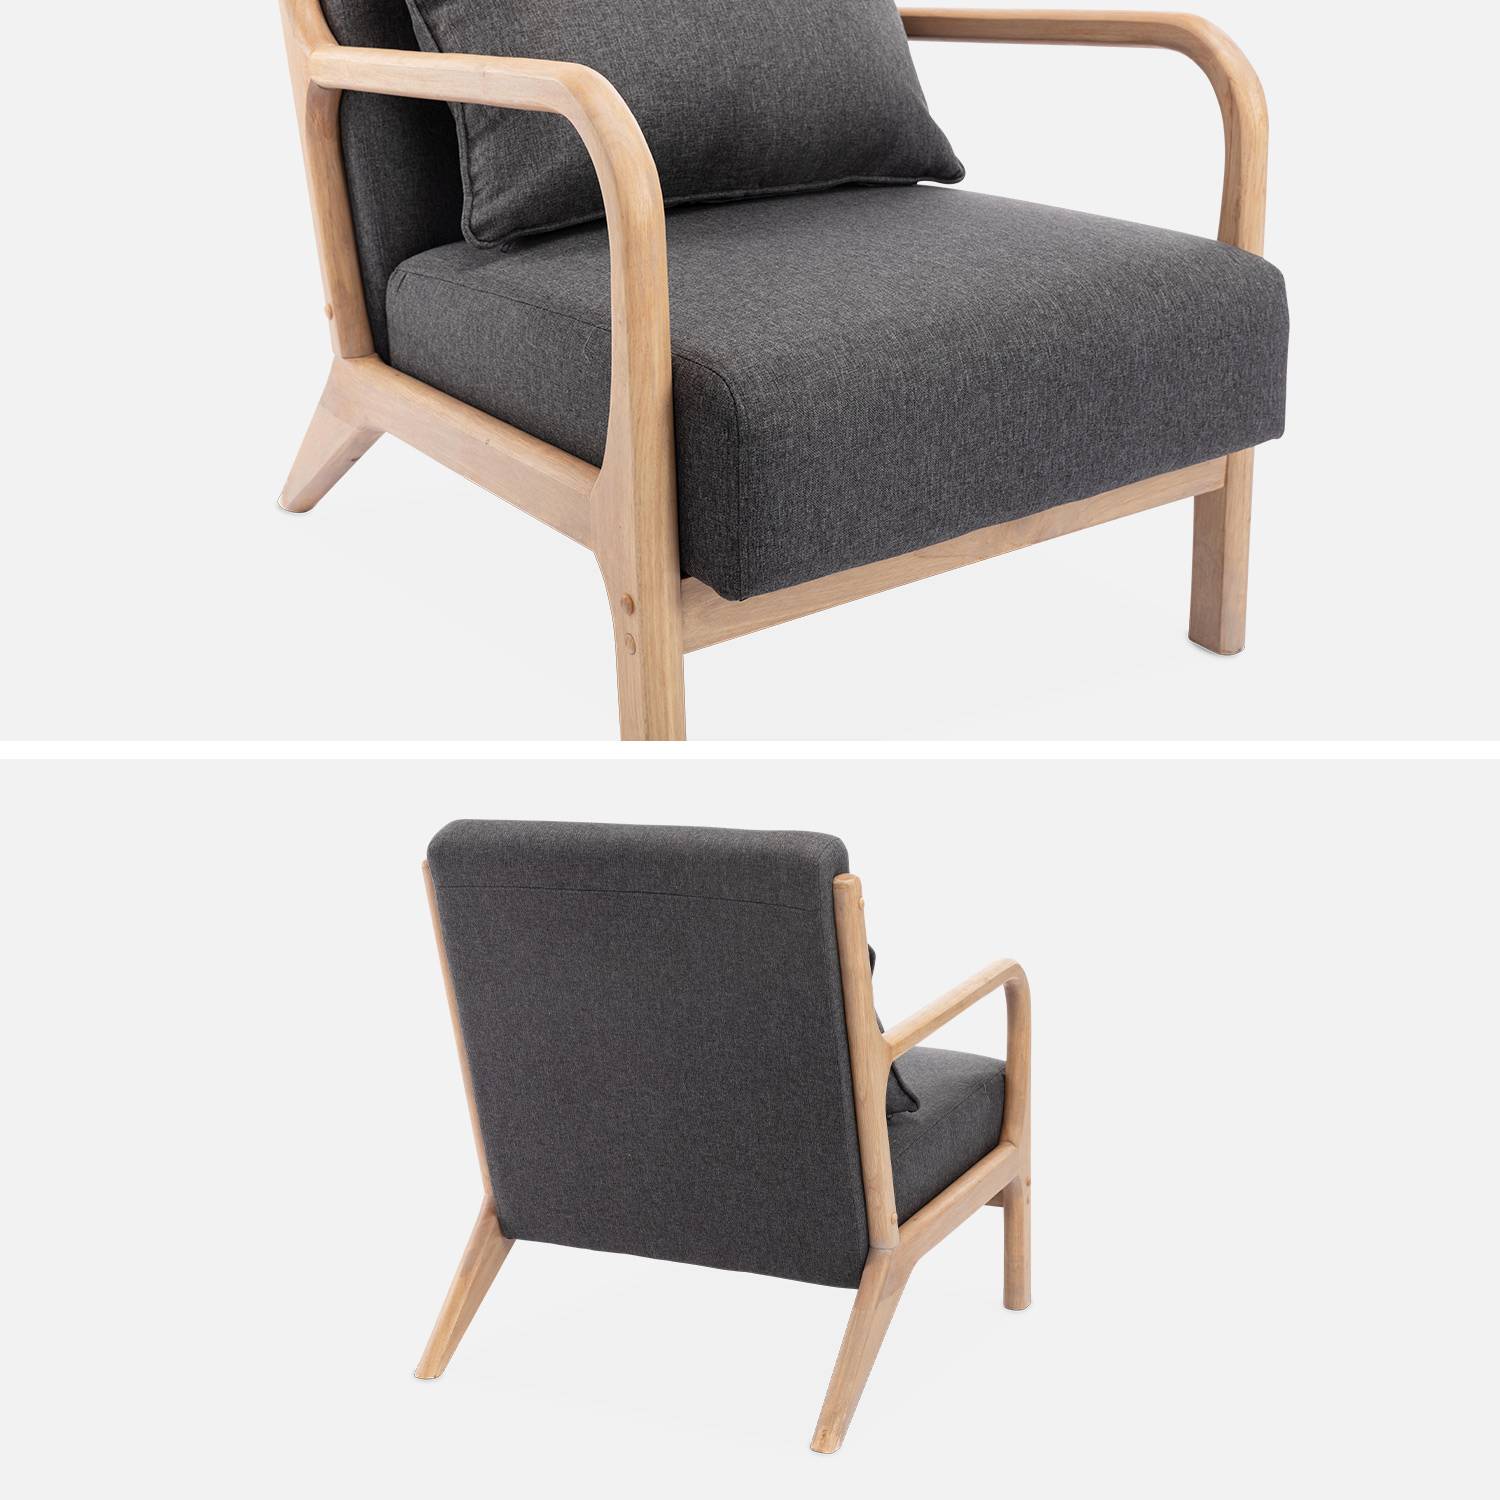 Poltrona di design in legno e tessuto, 1 sedile fisso diritto, gambe a compasso scandinave, struttura in legno massiccio, seduta confortevole, grigio scuro Photo6